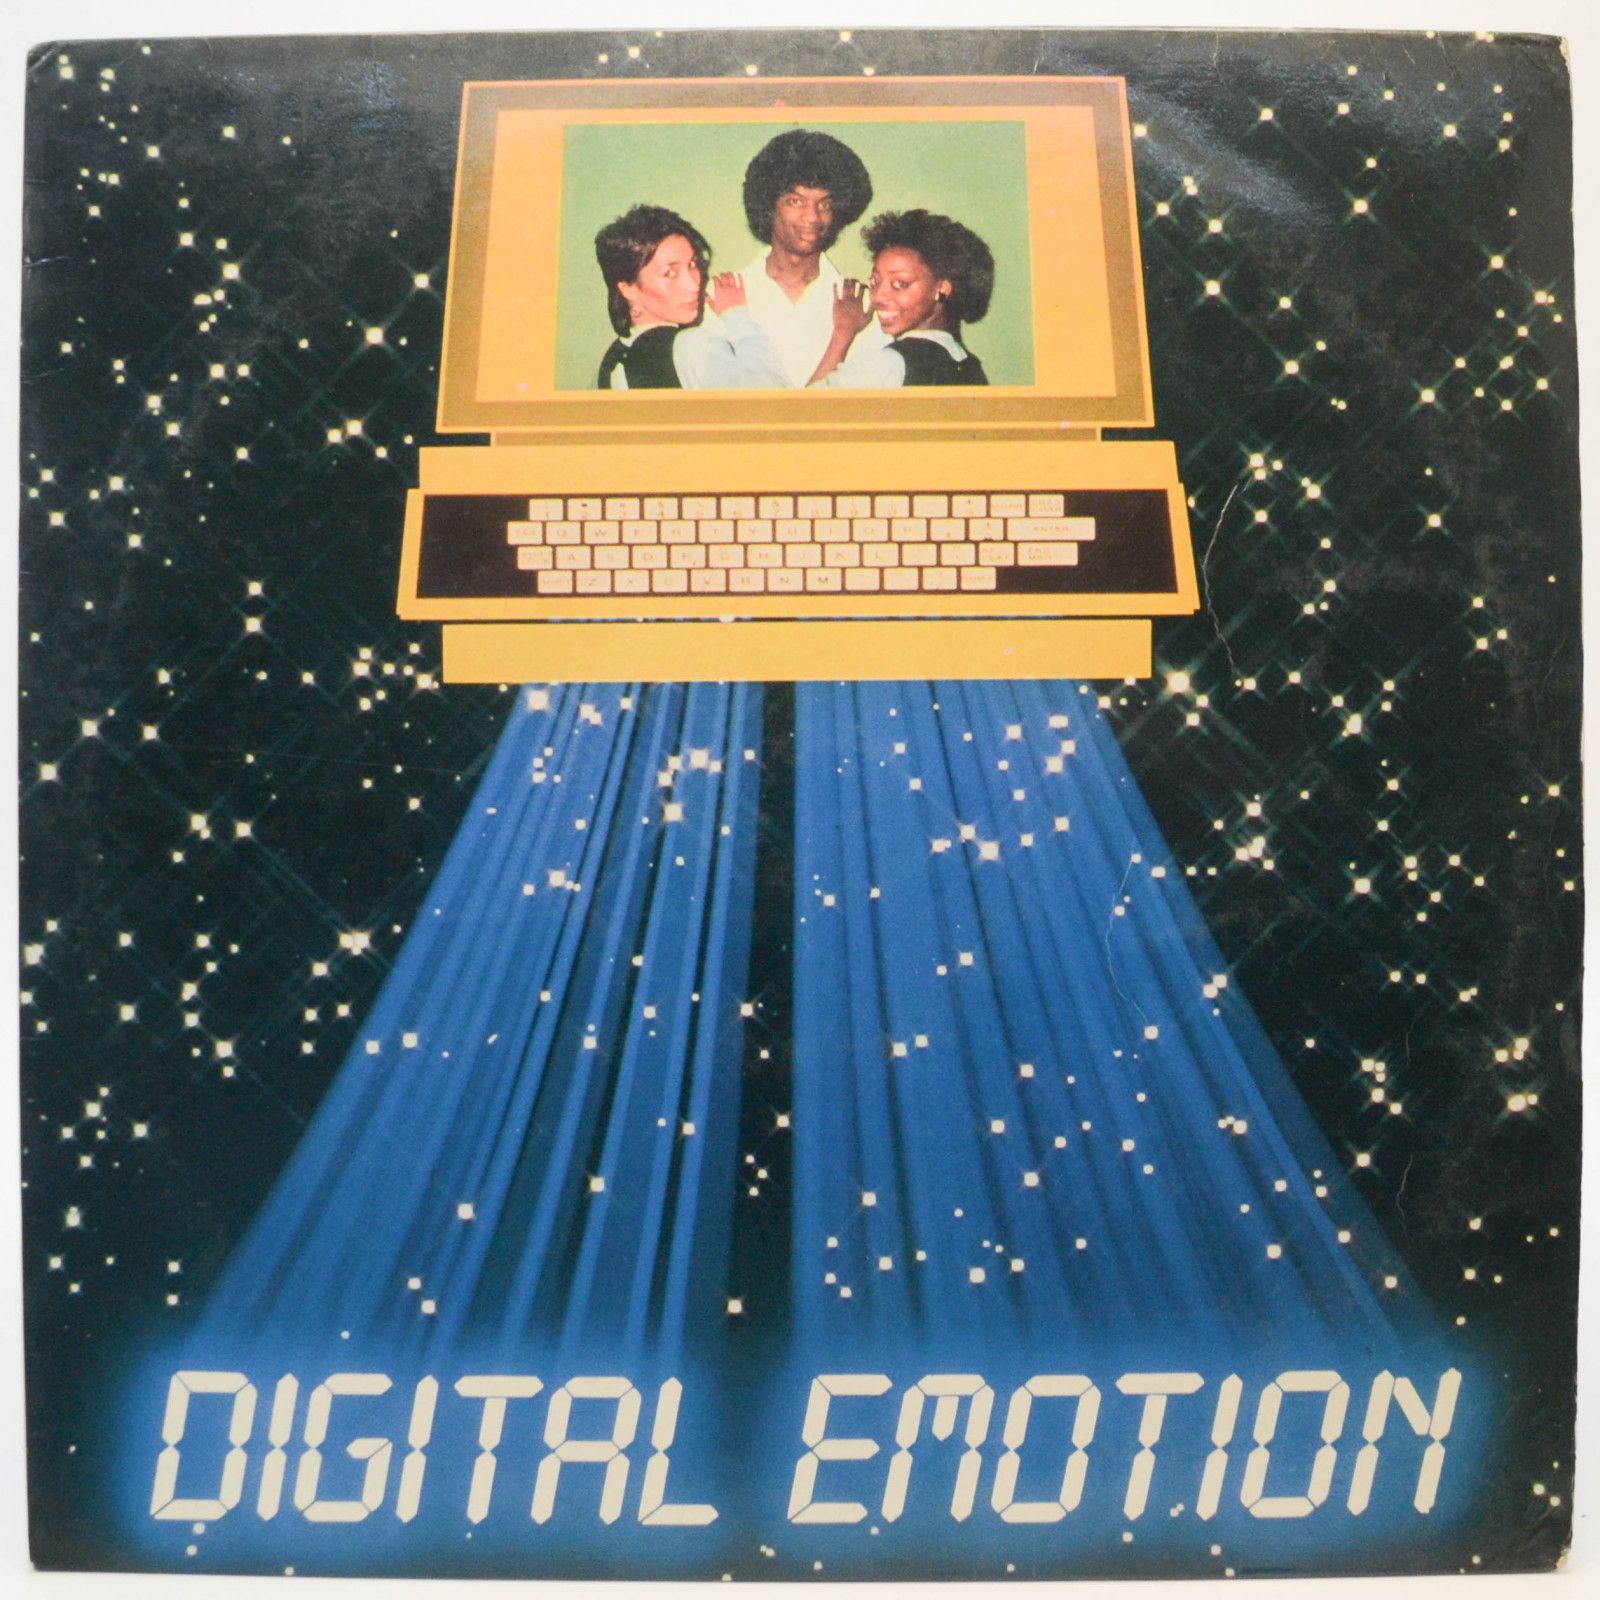 Digital Emotion — Digital Emotion, 1984